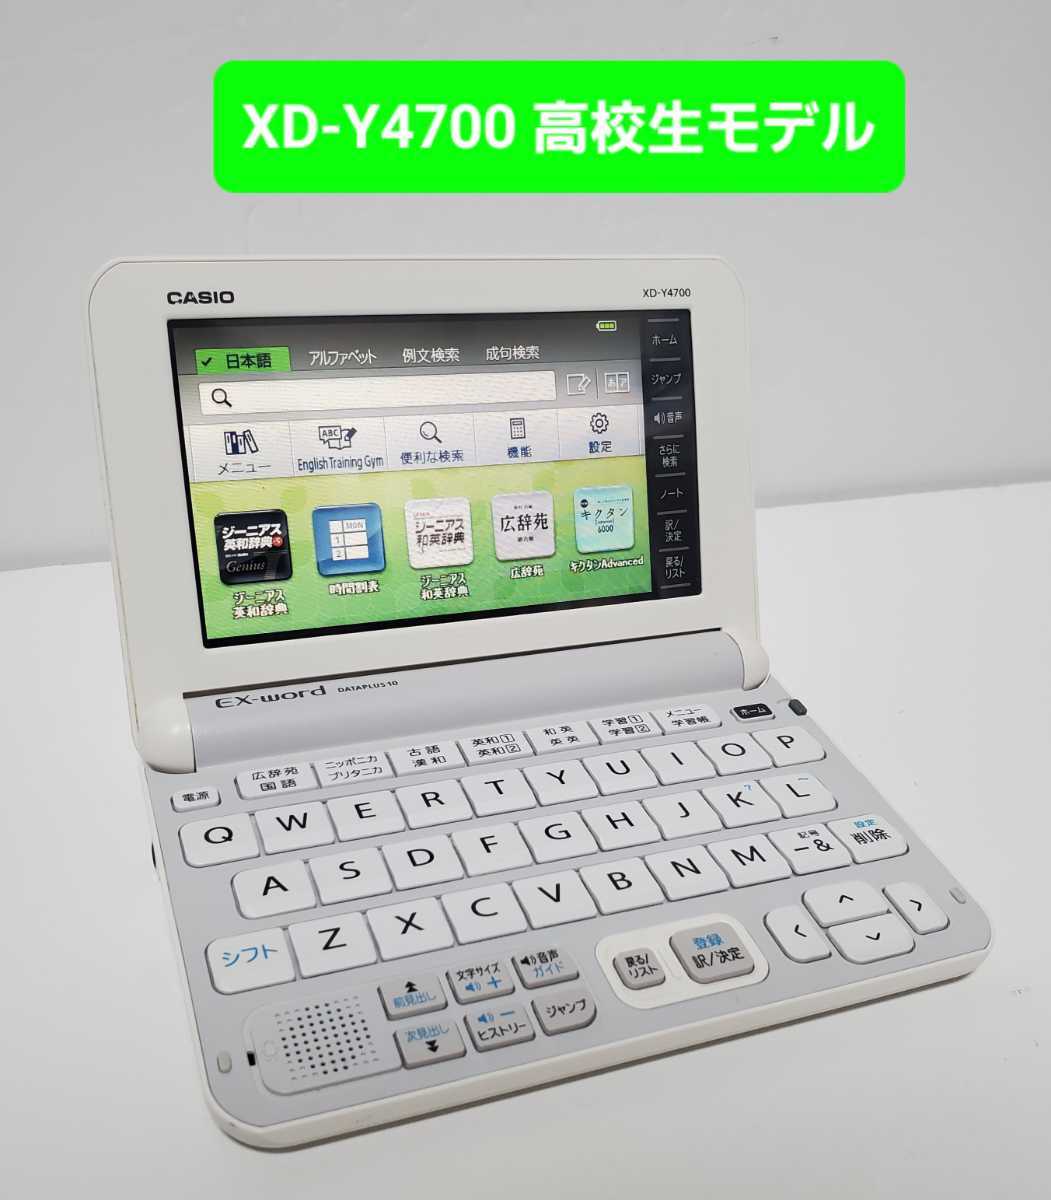 していない 高校生モデル XD-SV4750 カシオ CASIO 電子辞書 EX-word 3EbzY-m86944181148 できる